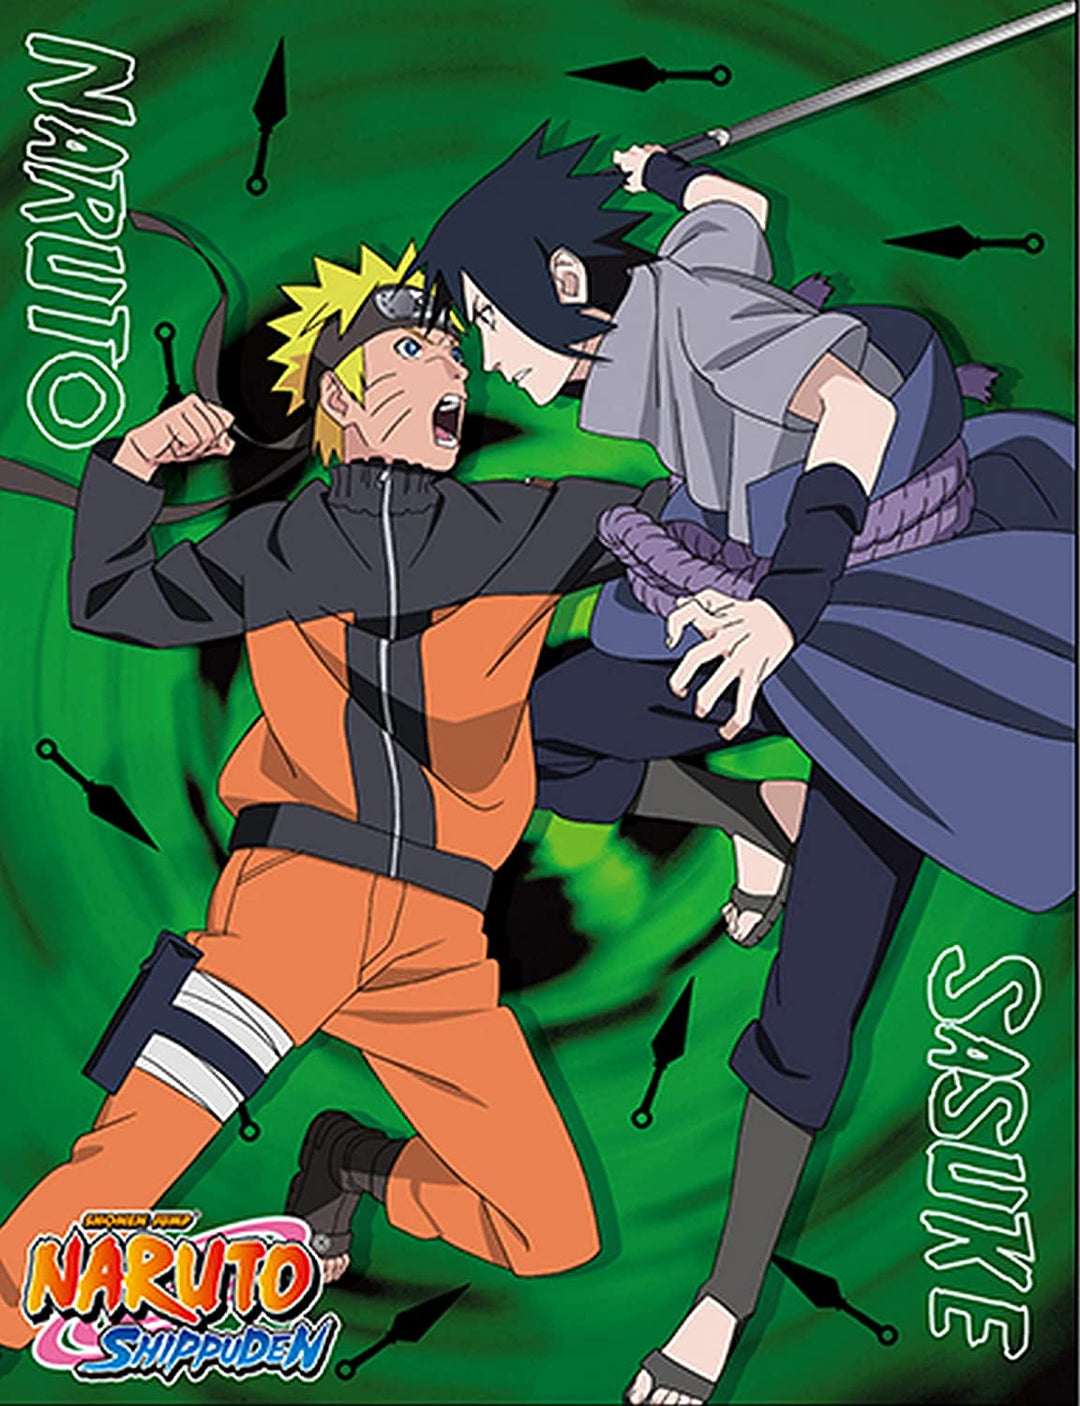 Naruto Shippuden - Sasuke & Naruto Sublimation Throw Blanket 46Wx60L